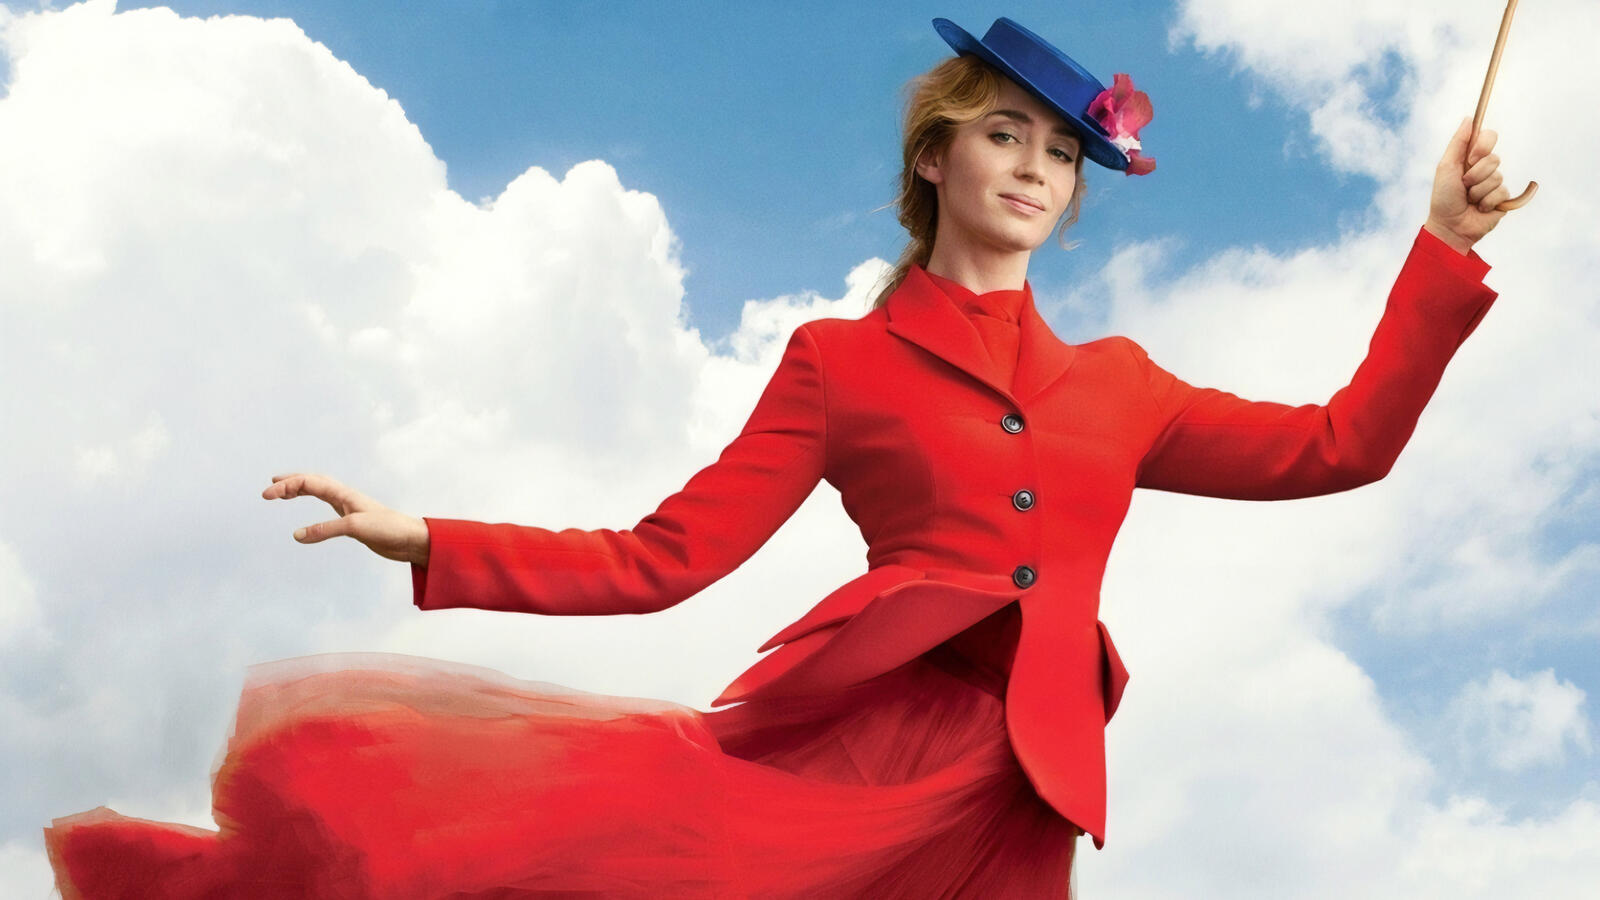 Бесплатное фото Эмили Блант в красном костюме на фоне облаков